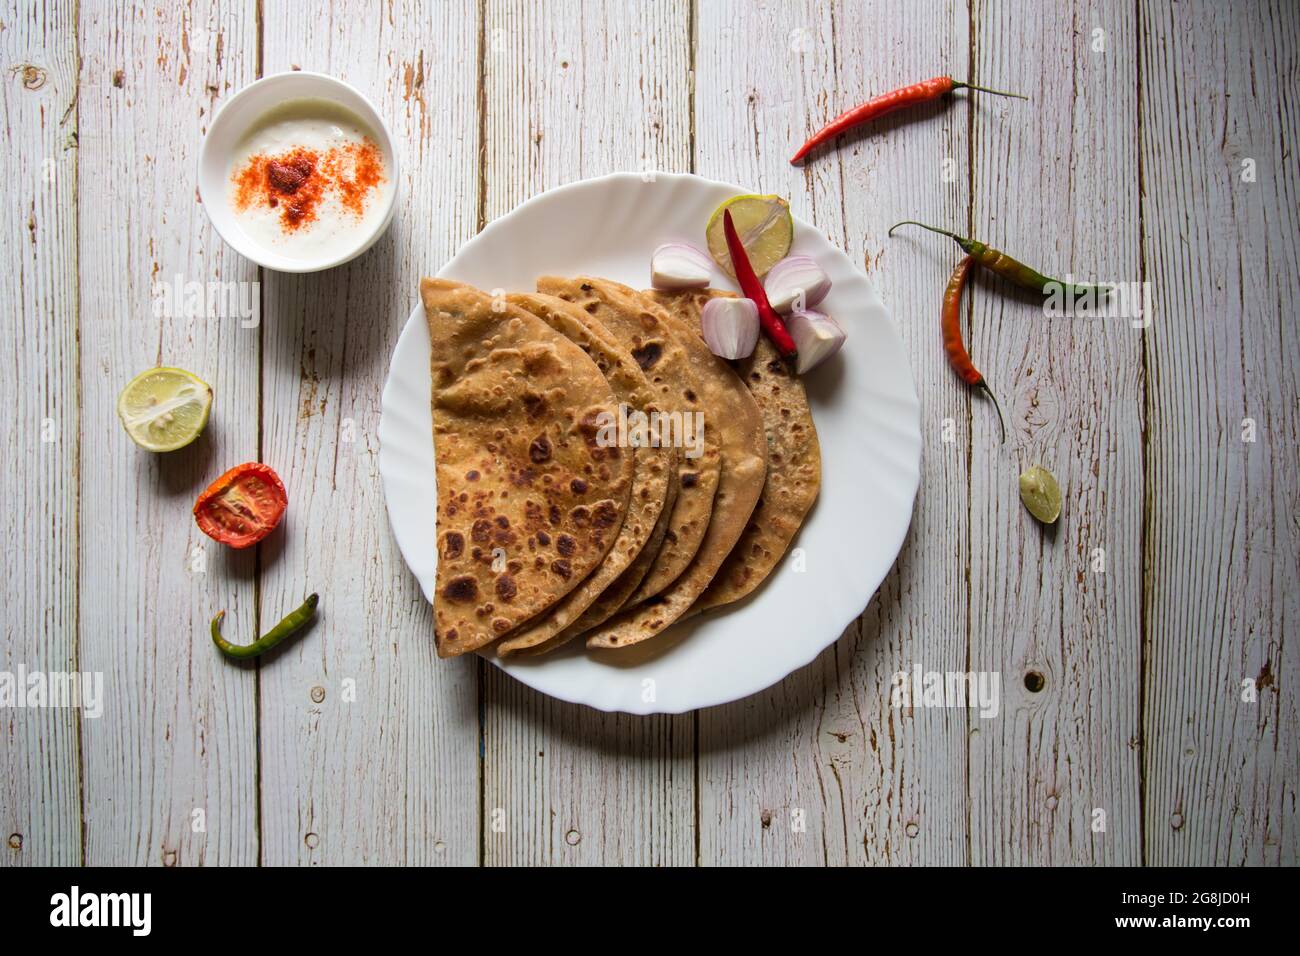 Gefüllte Kartoffel oder Aloo Paratha serviert mit Gewürzen und Quark. Ein indisches Frühstücksgericht. Stockfoto